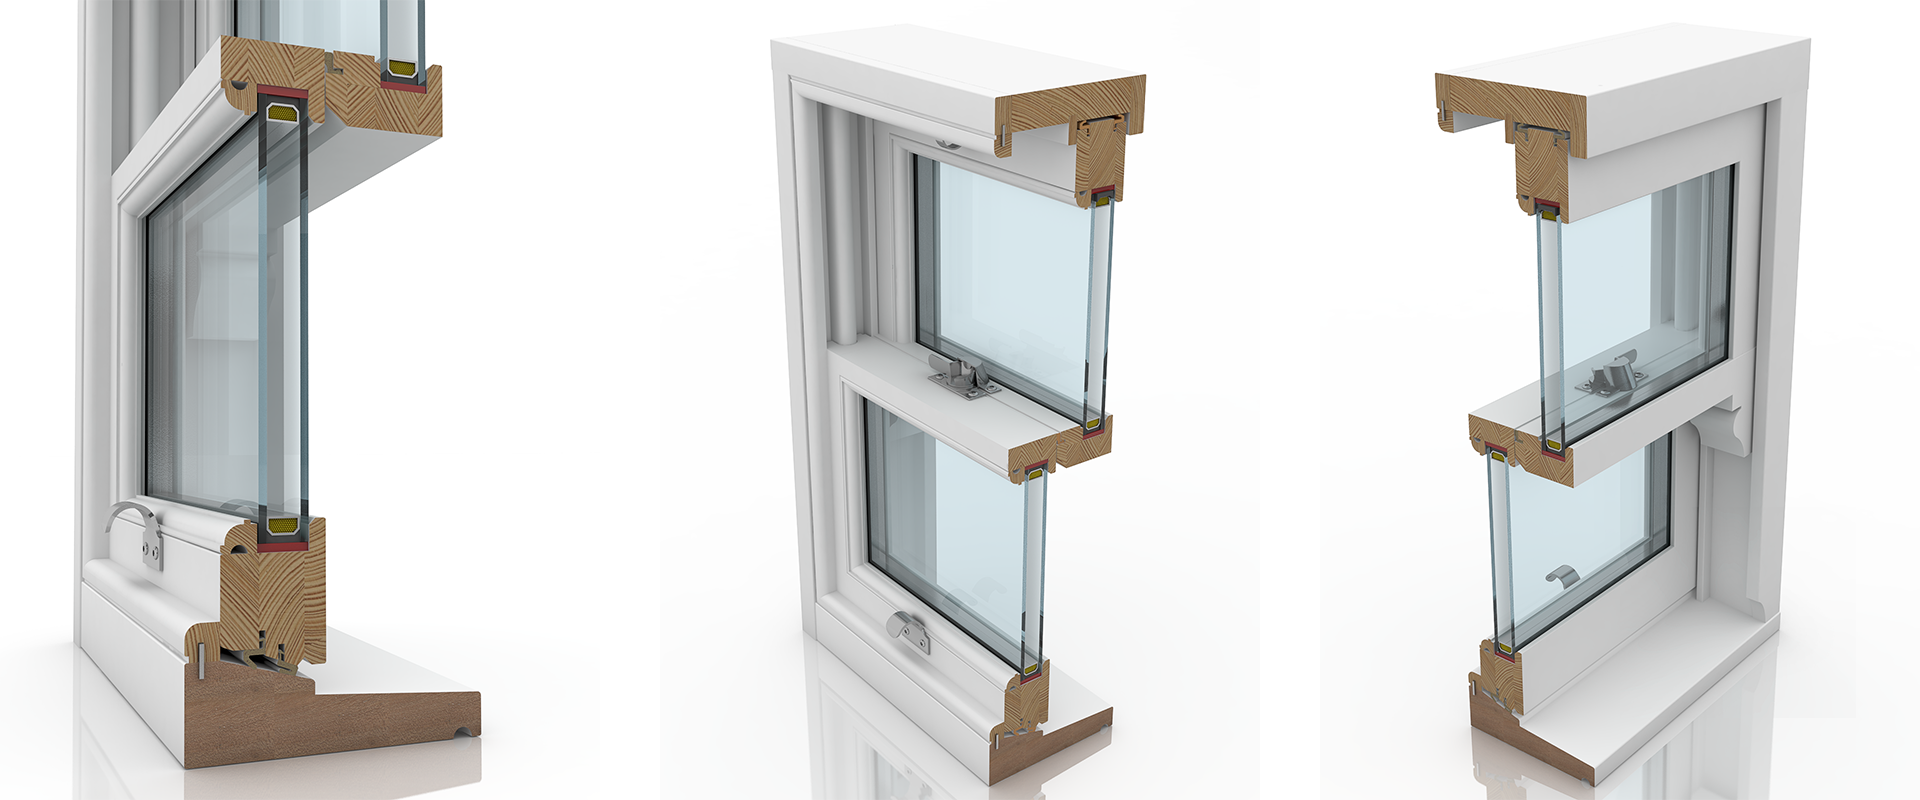 Double-hung Sash Window. Окна слайдеры Брусбокс. Оконный профиль g3000. Подъемные окна слайдер вертикально-подъемные.